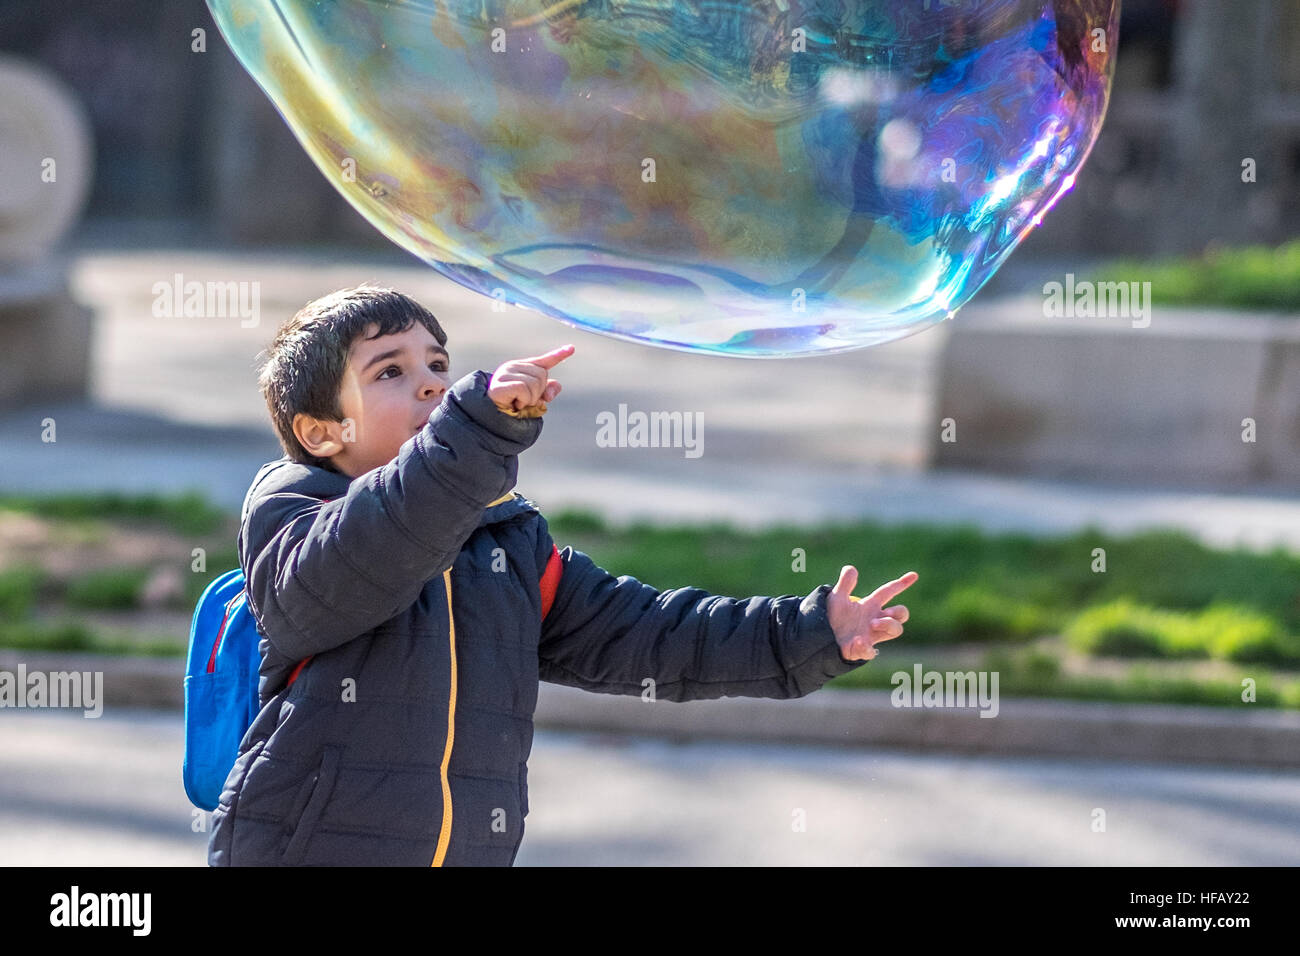 Un enfant est sur le point de pop une bulle de savon géante Photo Stock -  Alamy